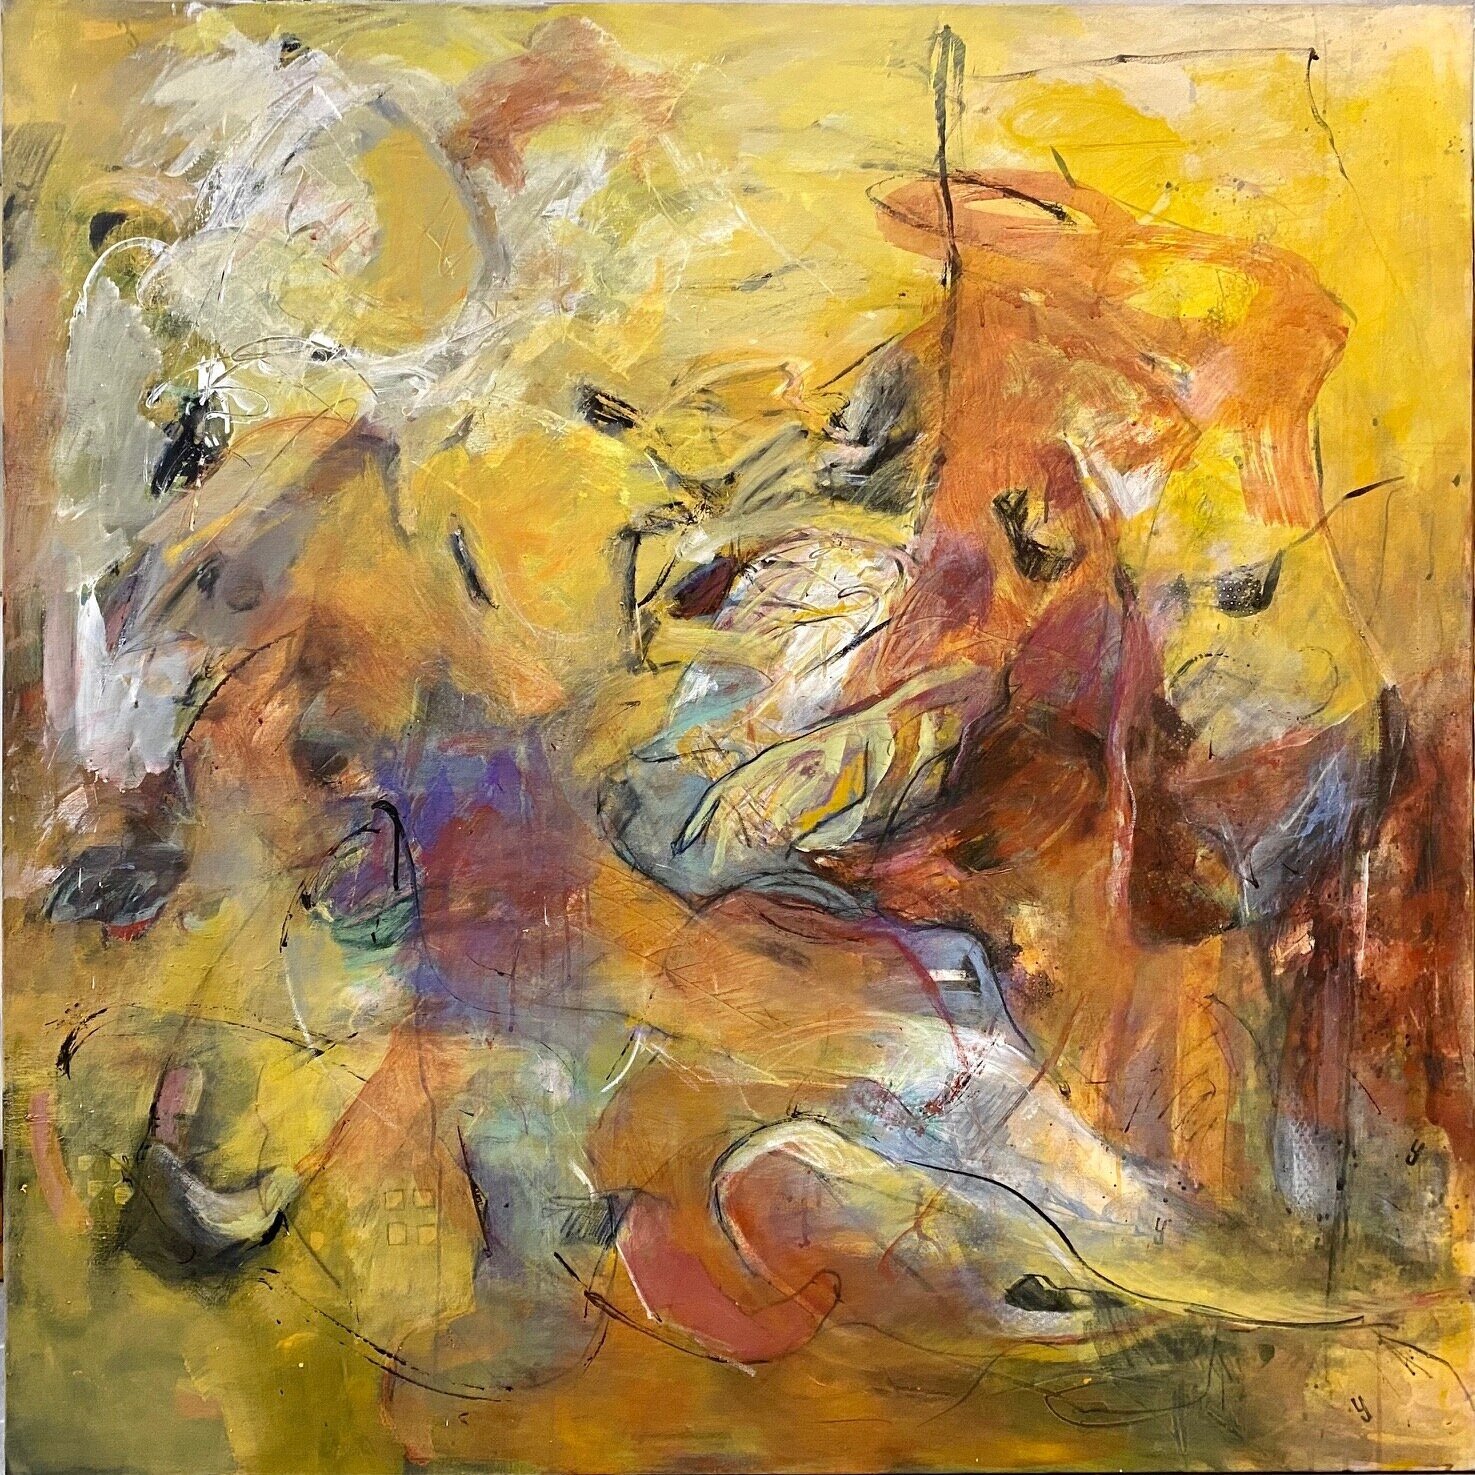   Charo Zapater  Sin título  , 2020   Técnica mixta. Acrílico sobre lienzo  140 x 140 cm  Imaginario Galería de Arte 